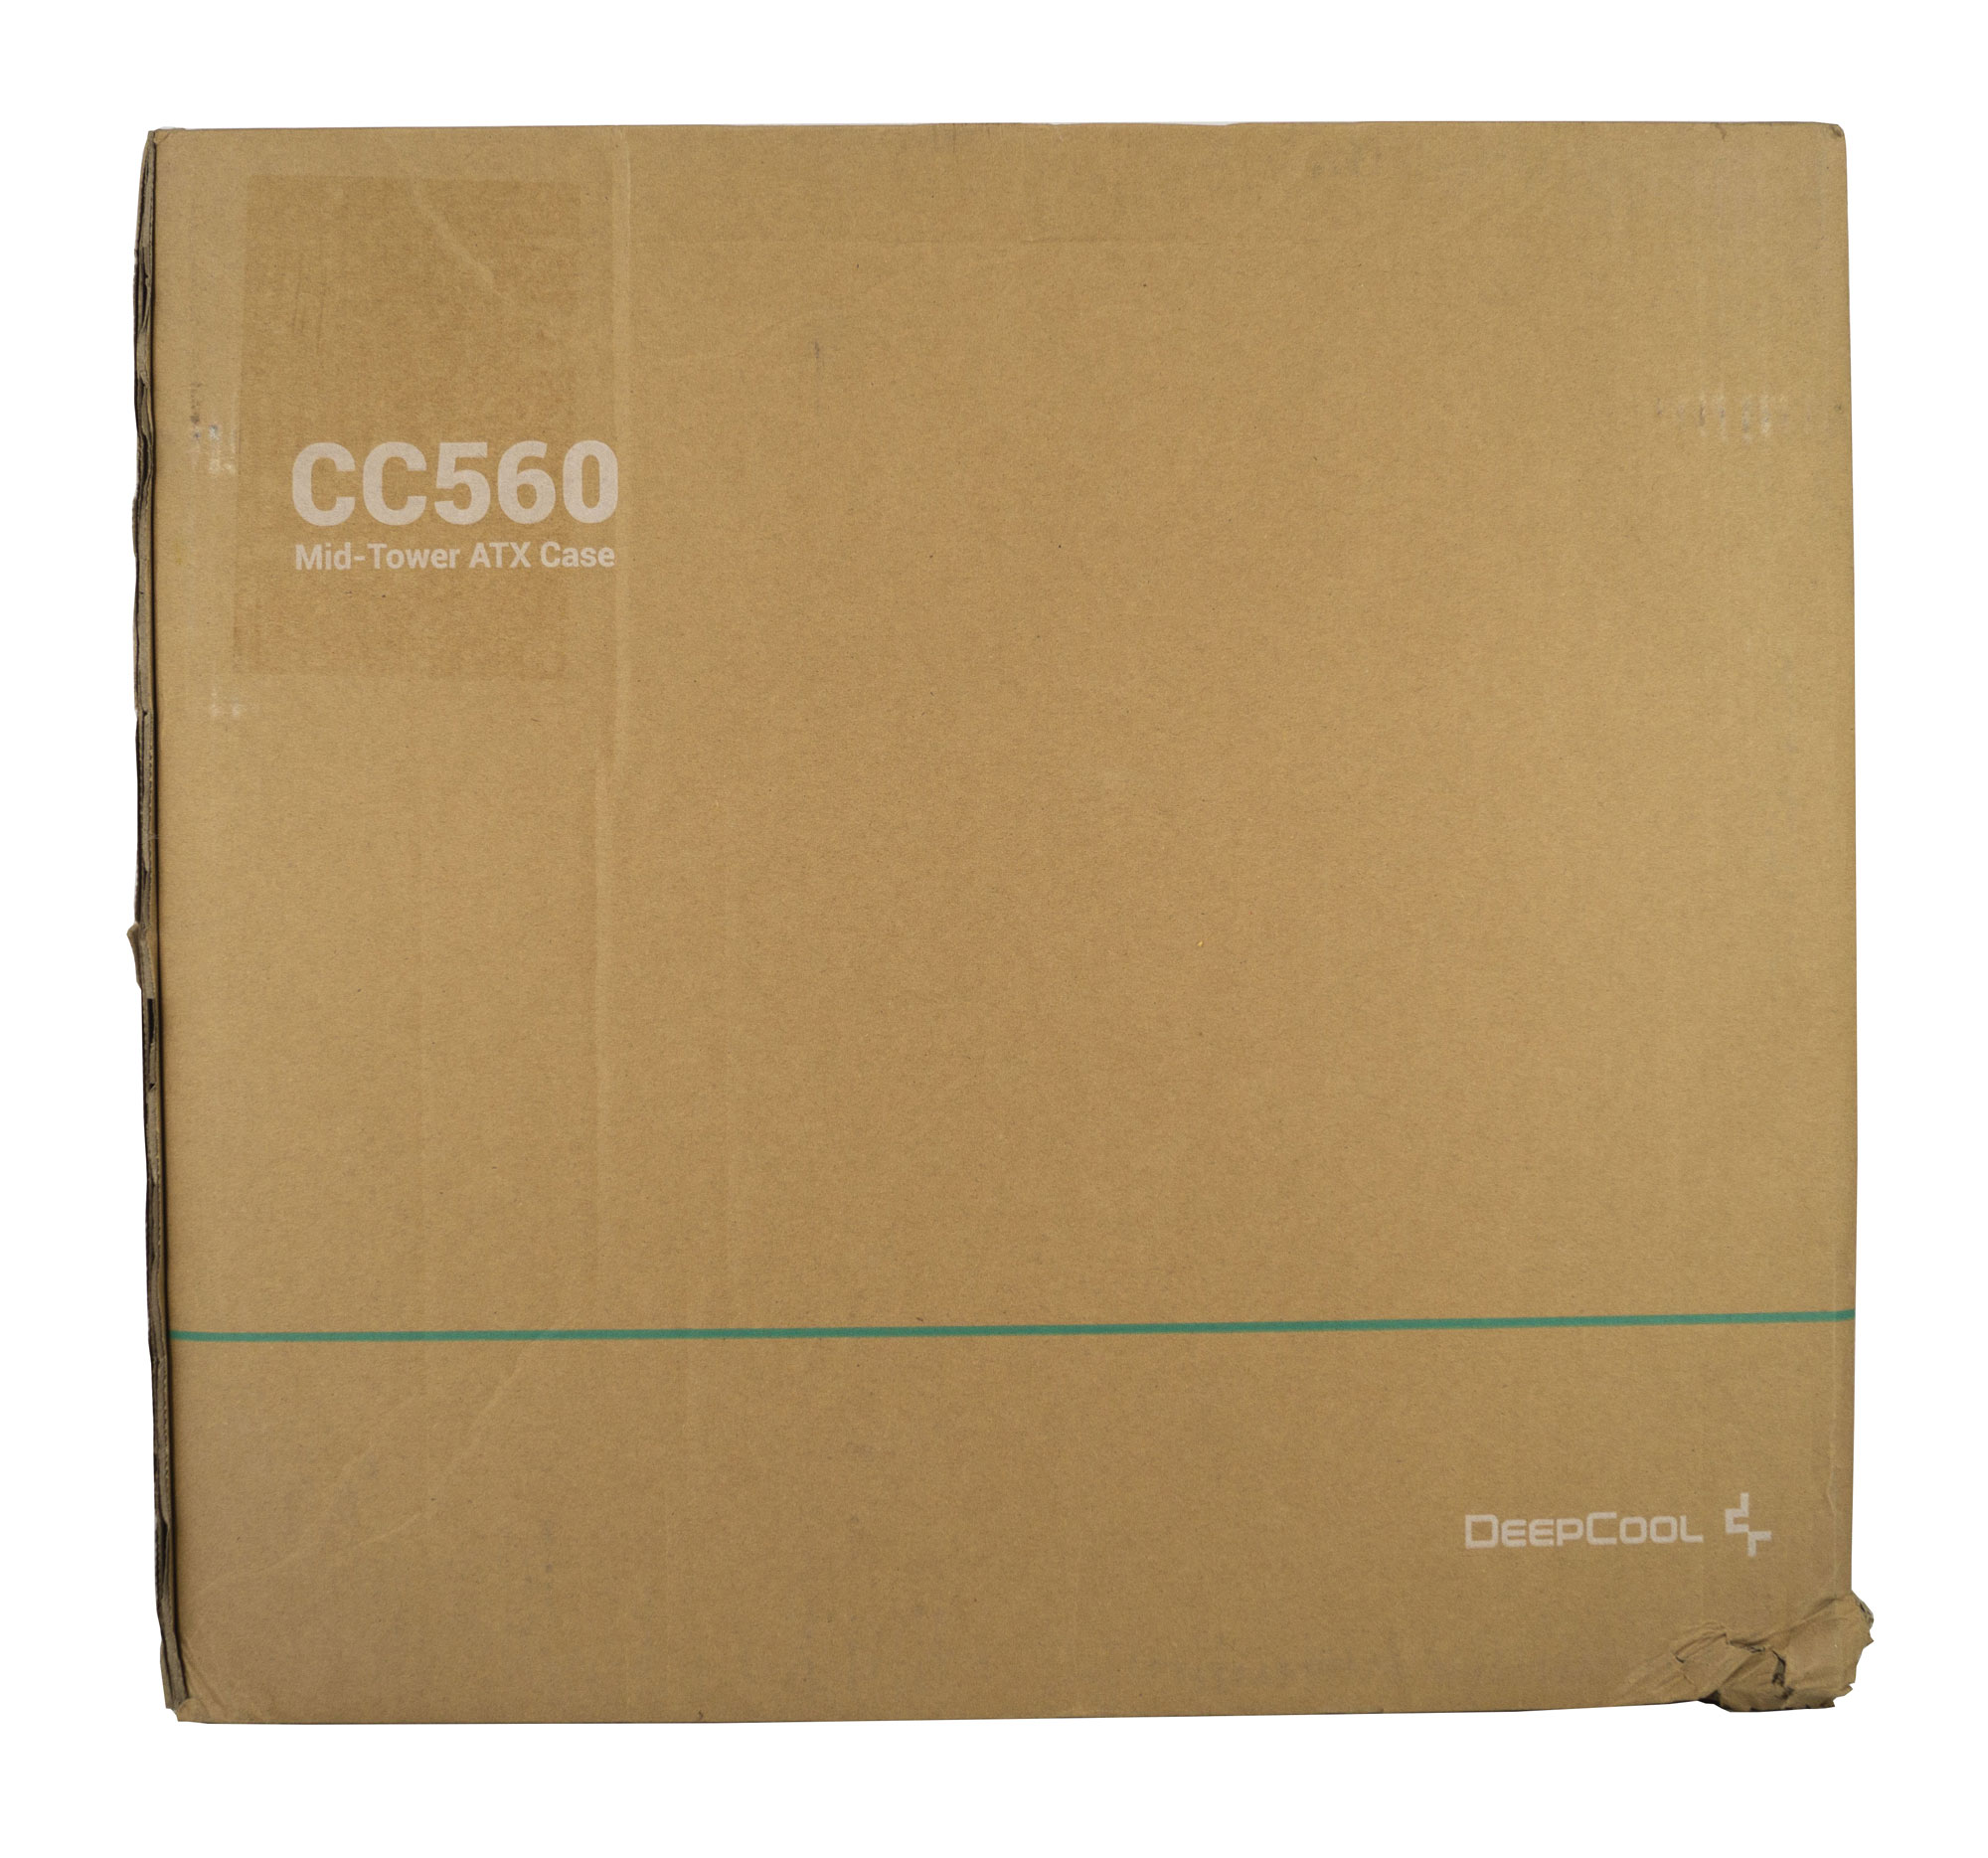 Deepcool Cc560 002